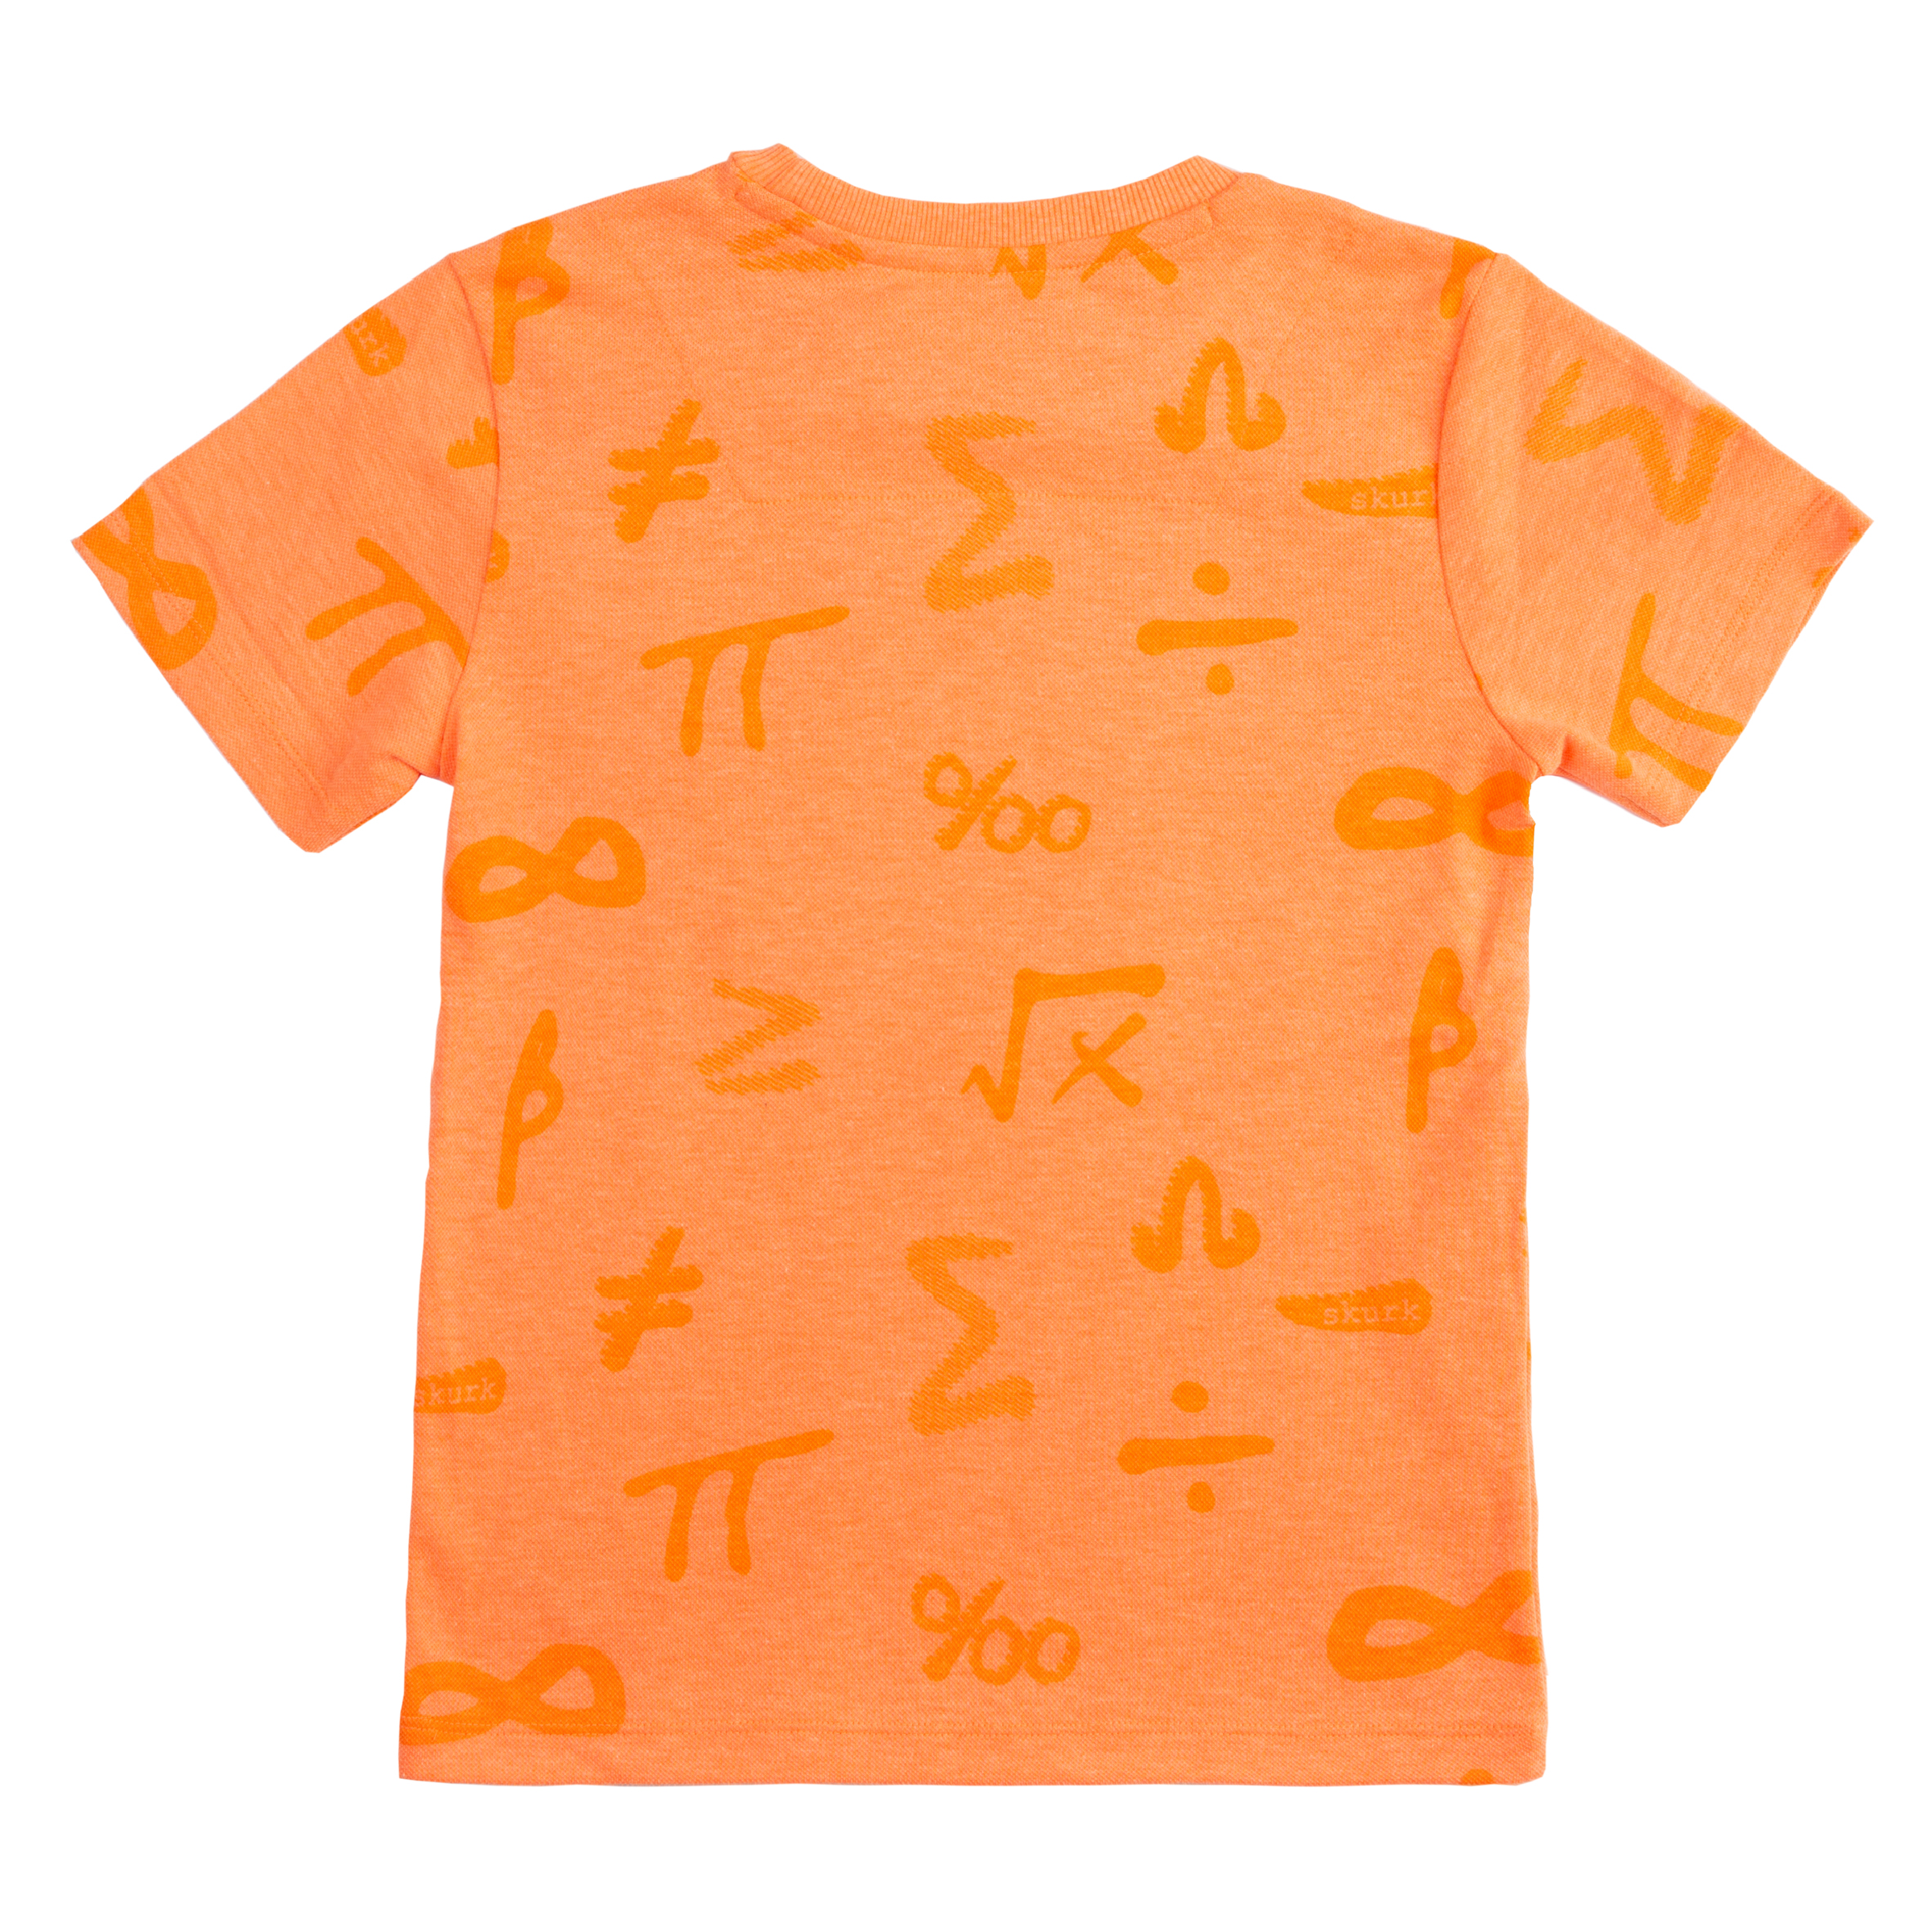 Jongens T-shirt Trenton van Skurk in de kleur Light Orange in maat 164, 170.